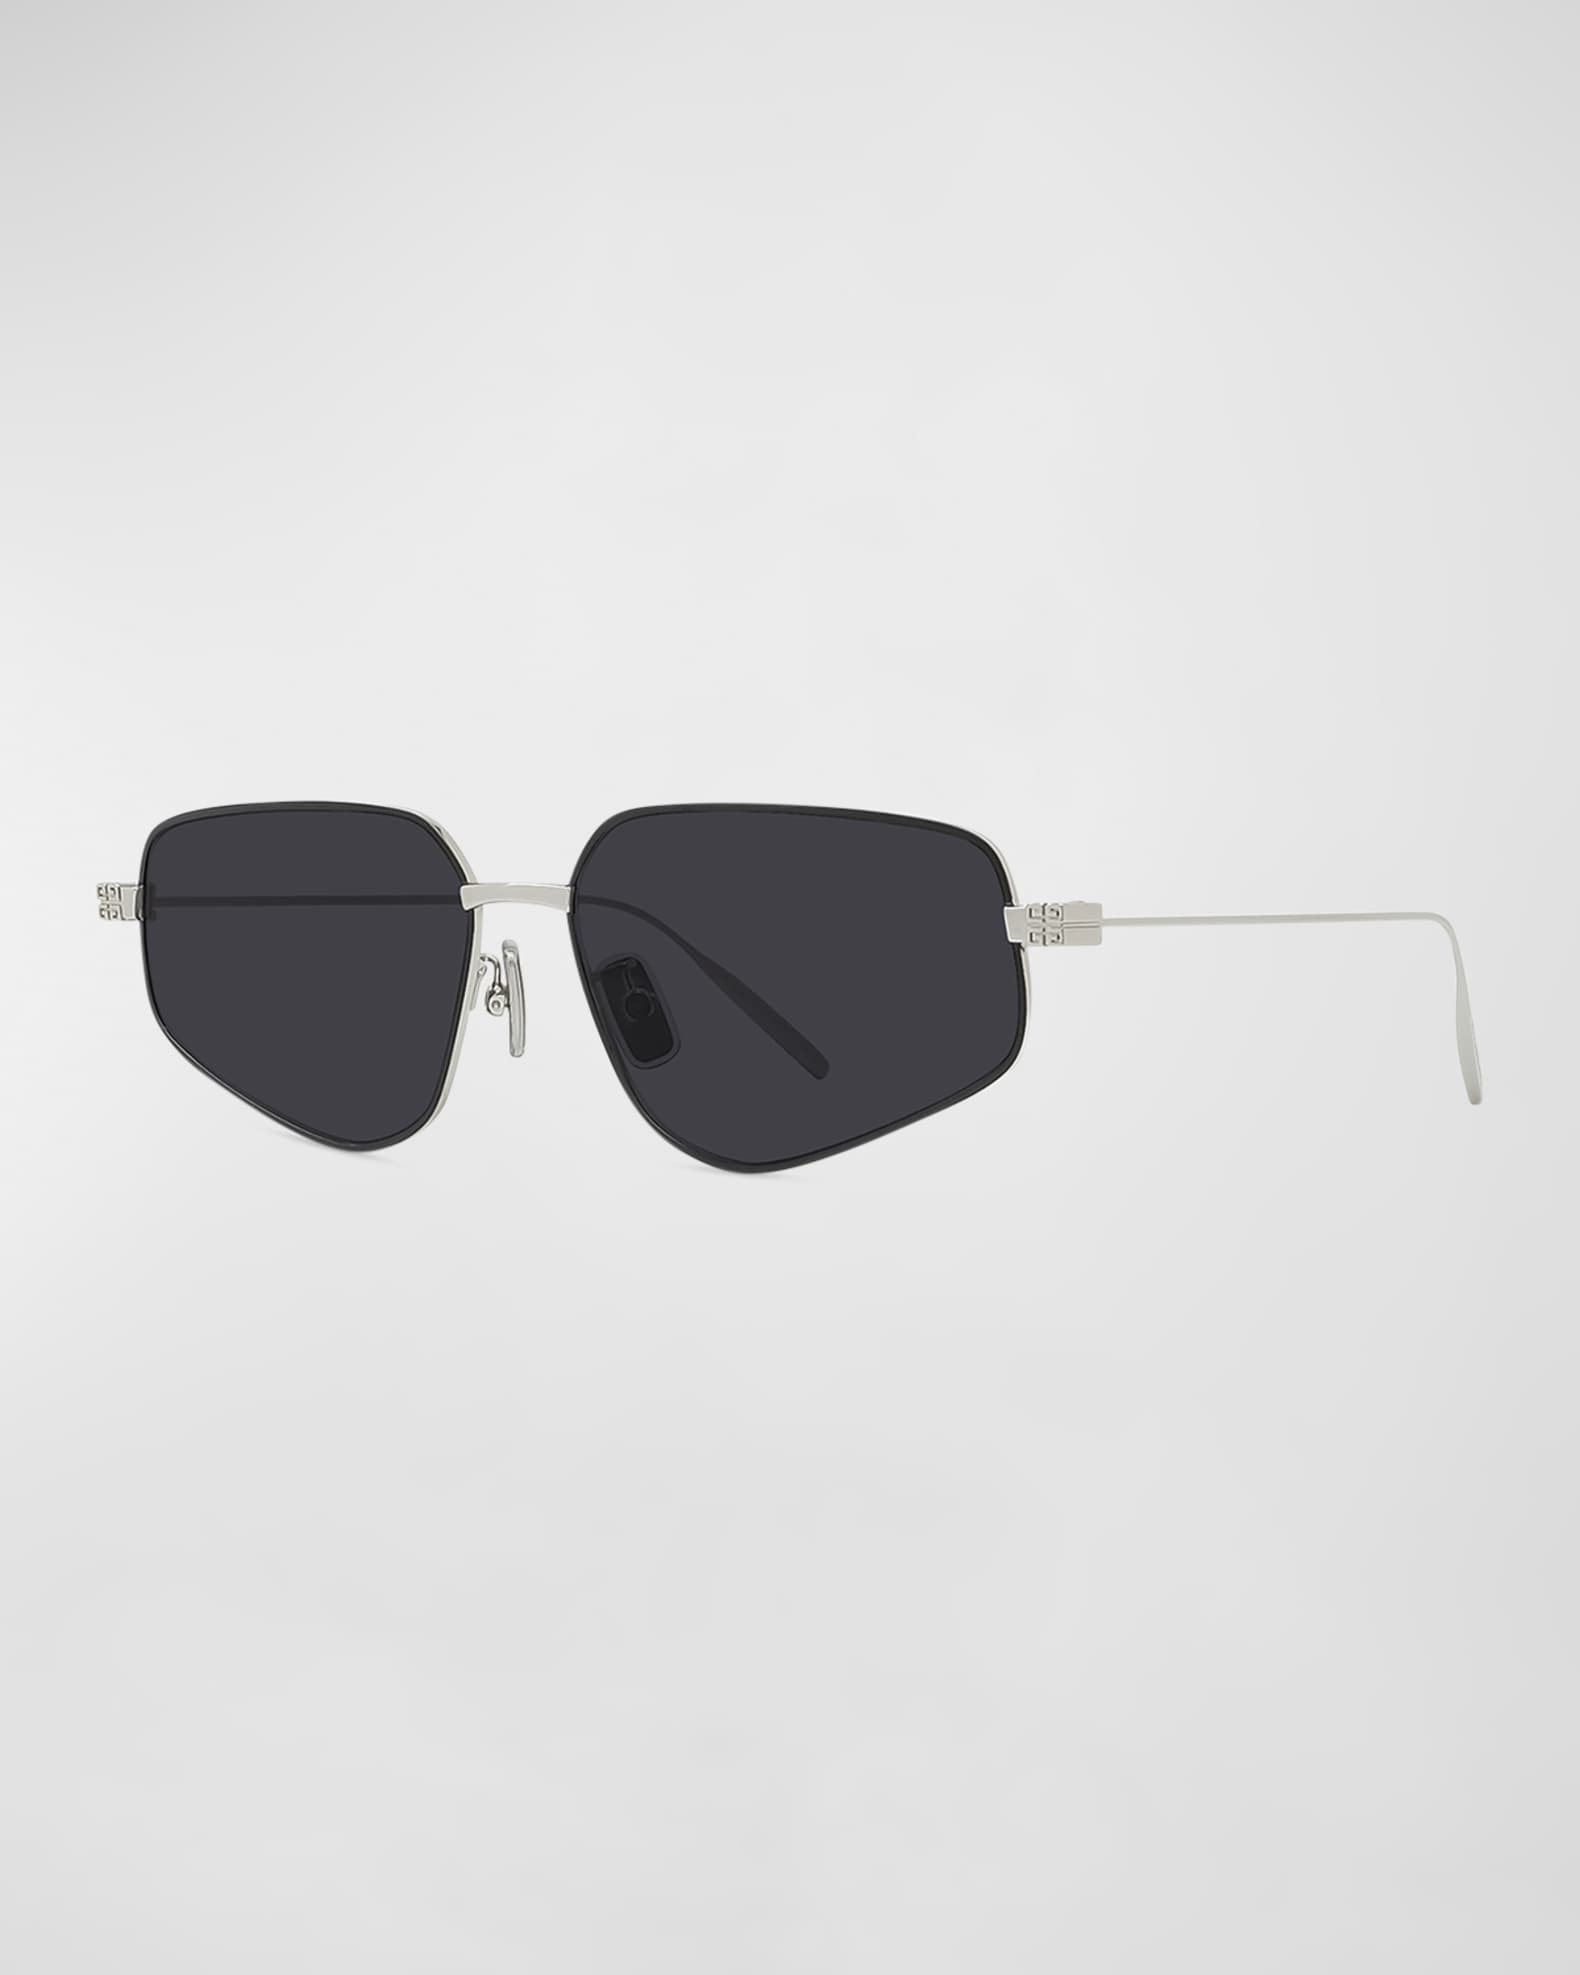 Summer ready with Ralph Lauren's Metal Pilot sunglasses